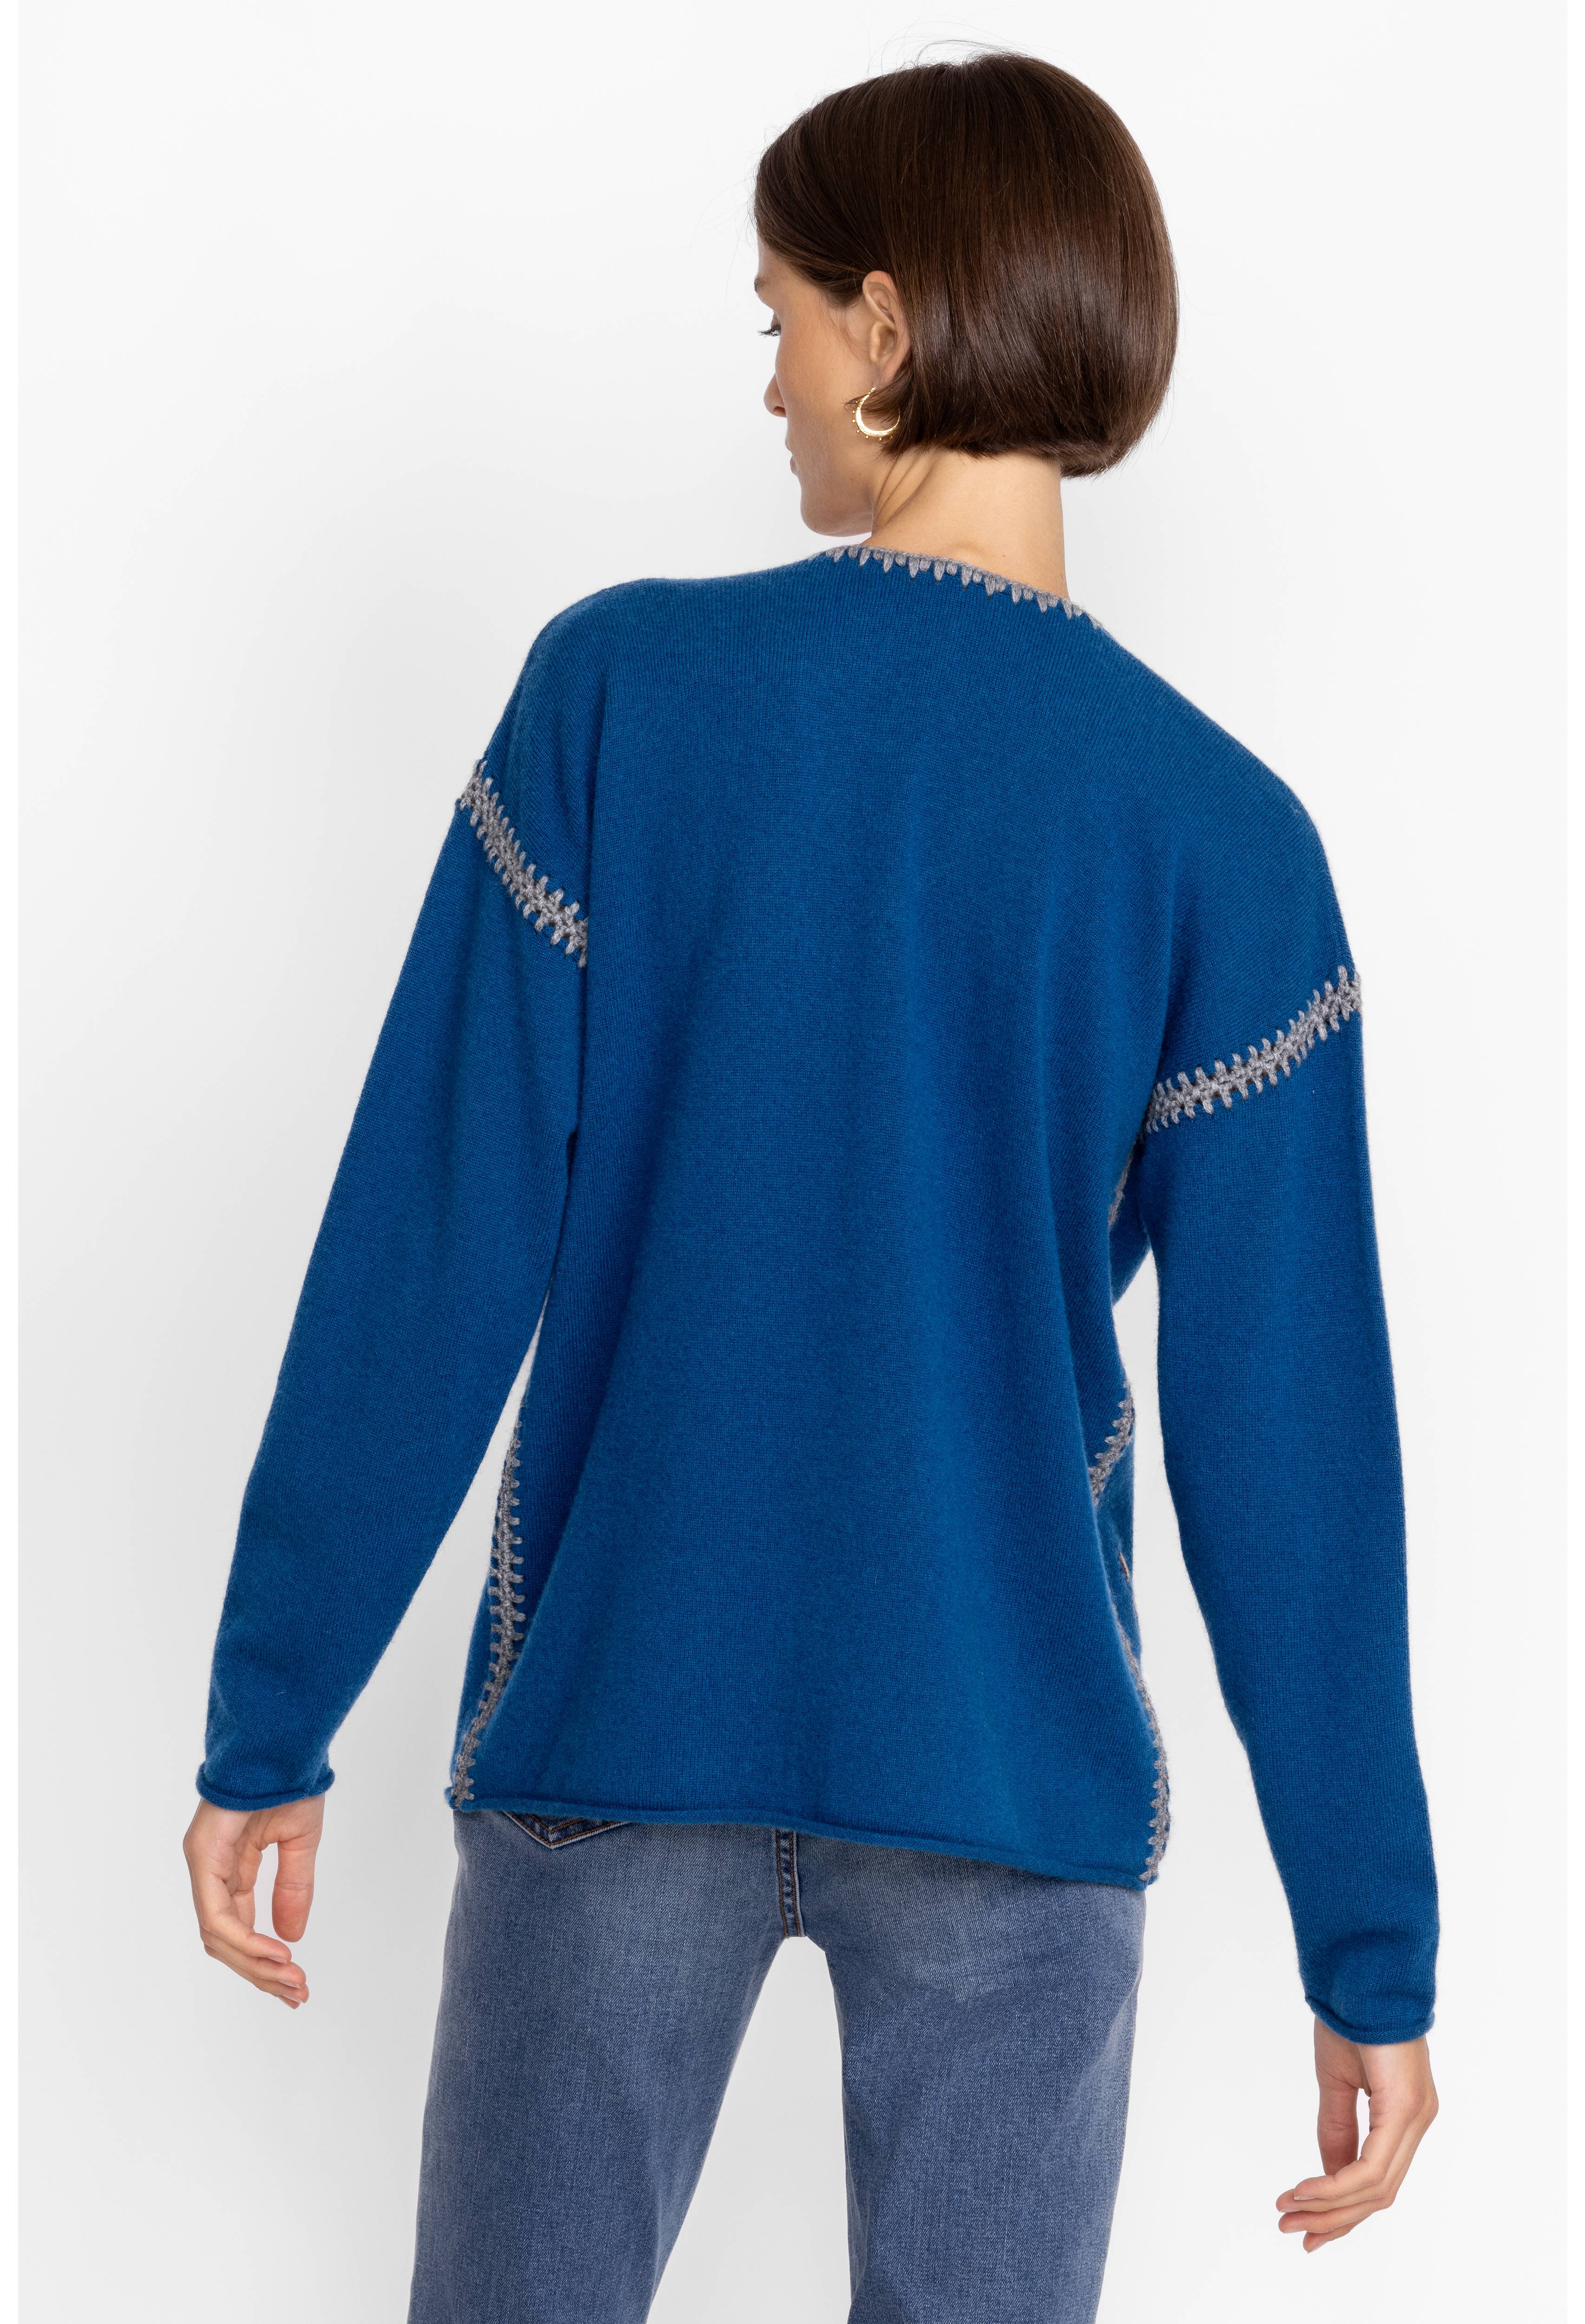 Sidona Cashmere Whipstitch Sweater, , large image number 4